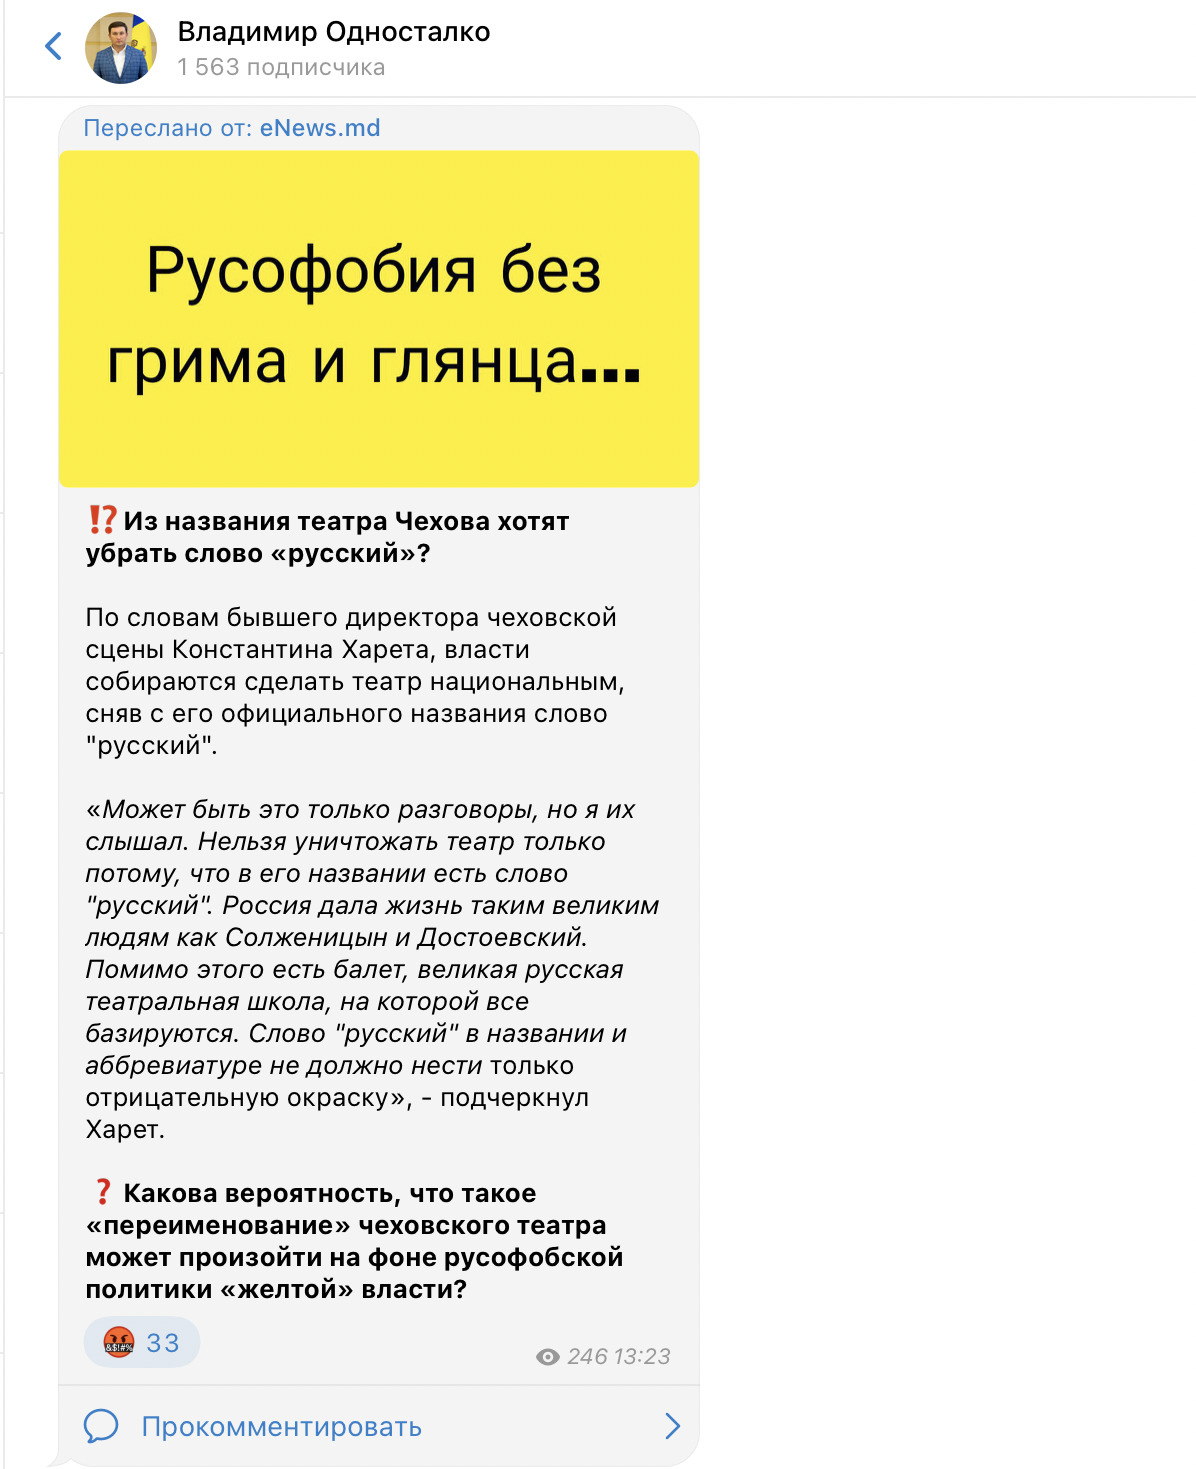 Театр Чехова перестанет быть «русским»? Как появился очередной фейк про «русофобию в Молдове»